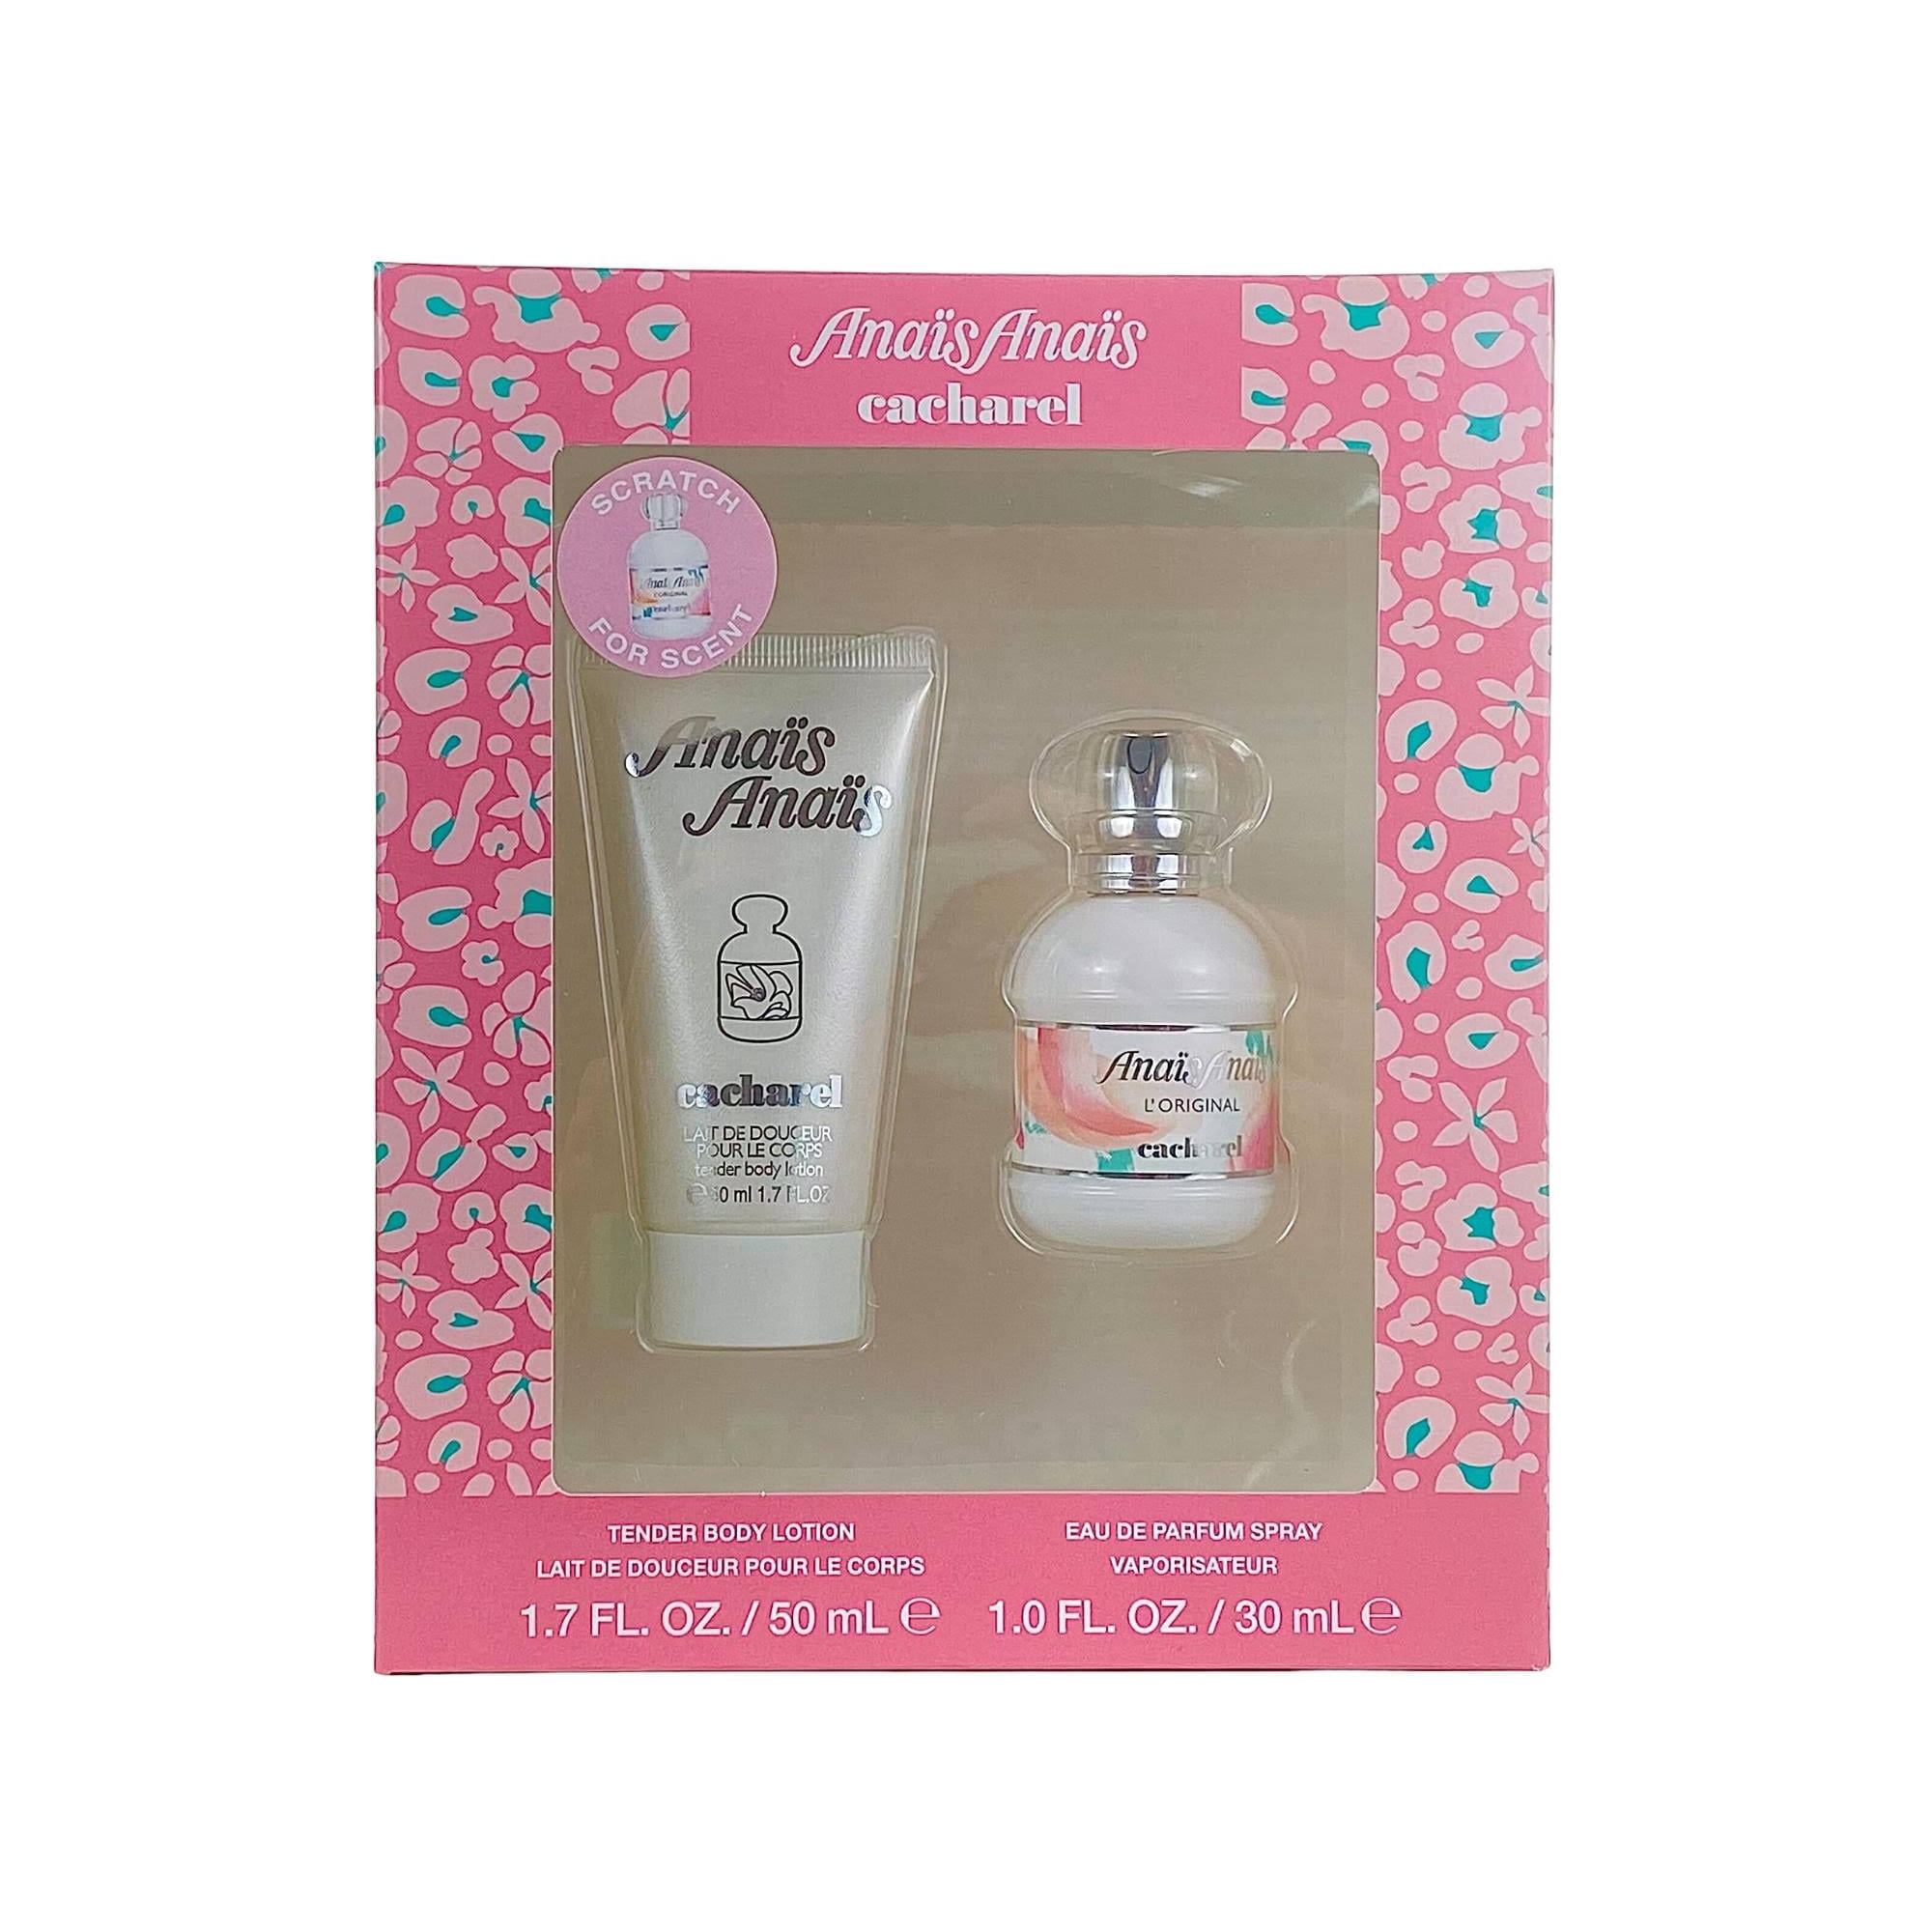 Cacharel Anais Anais Gift Set for Women, Eau de Parfum Spray Perfume 1